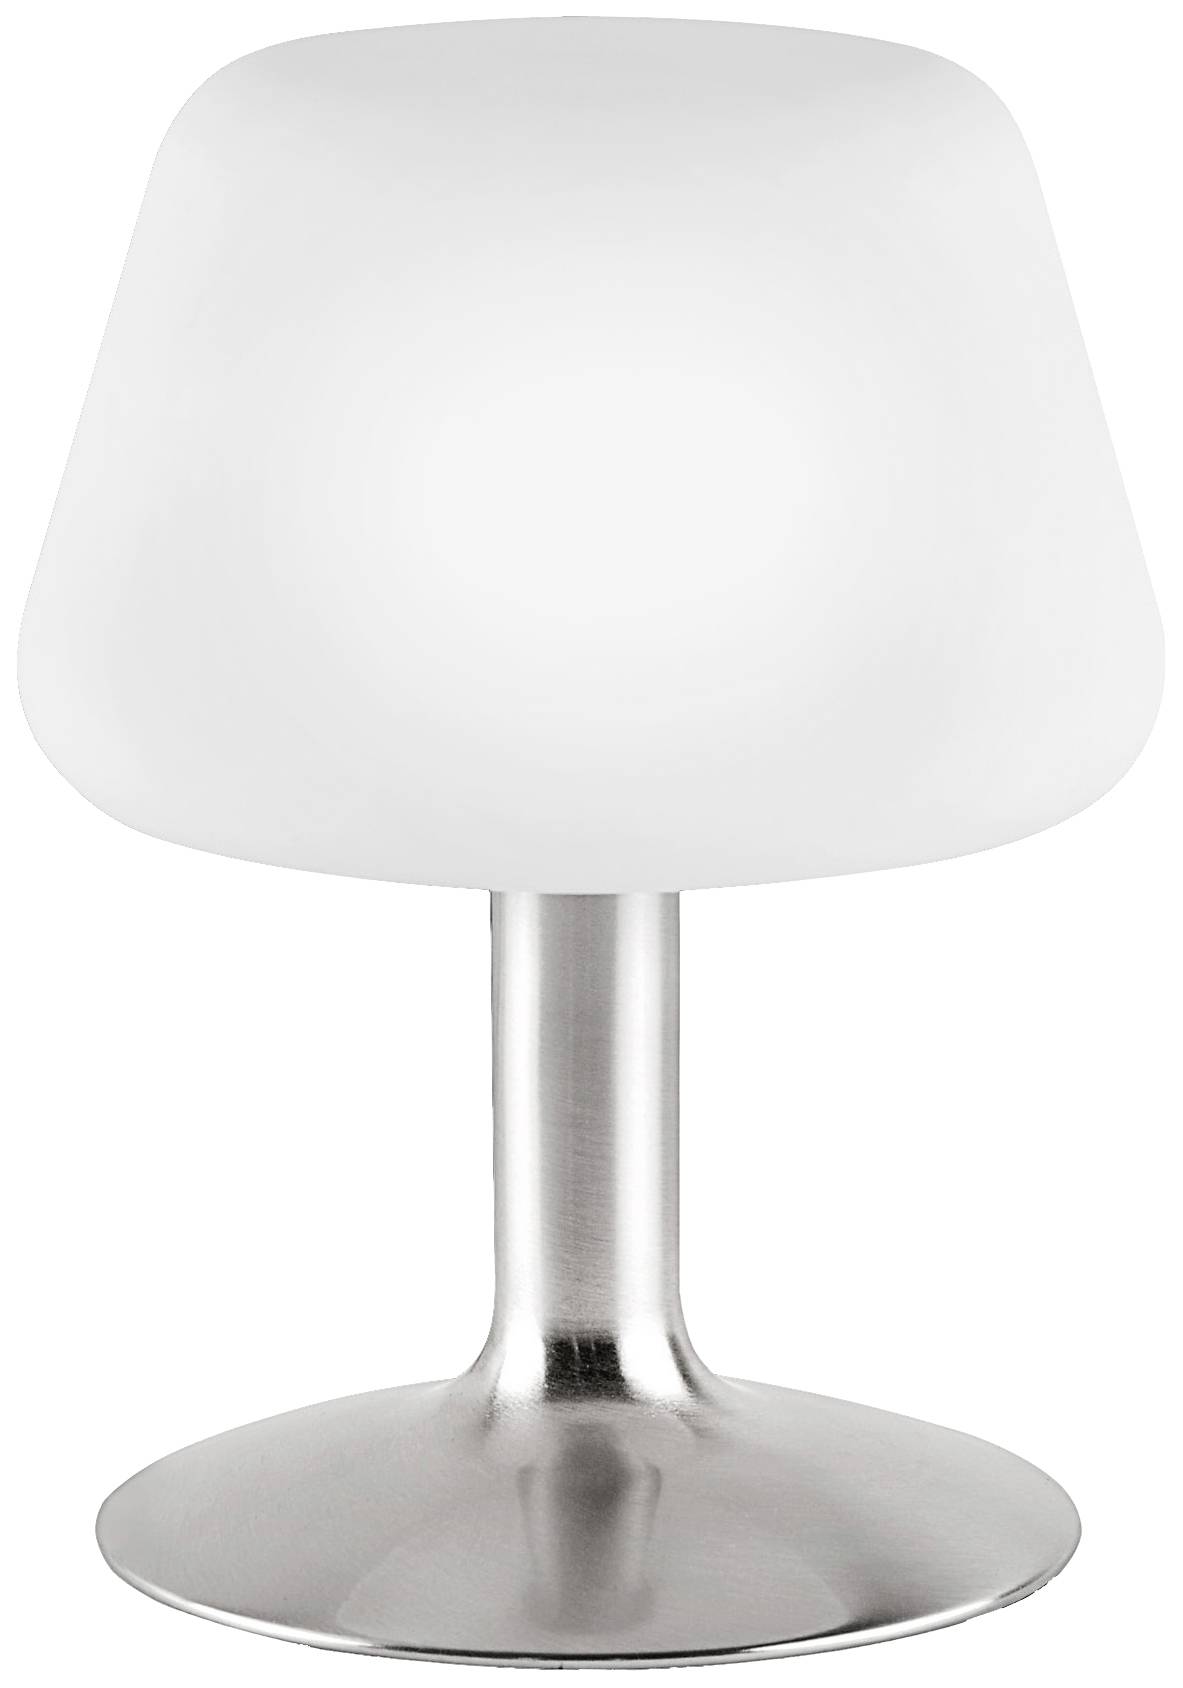 NEUHAUS Nachttischlampe LED G9 3 W Warm-Weiß EEK: A+ (A++ - E) Paul Neuhaus TILL 4078-55 Edelstahl (